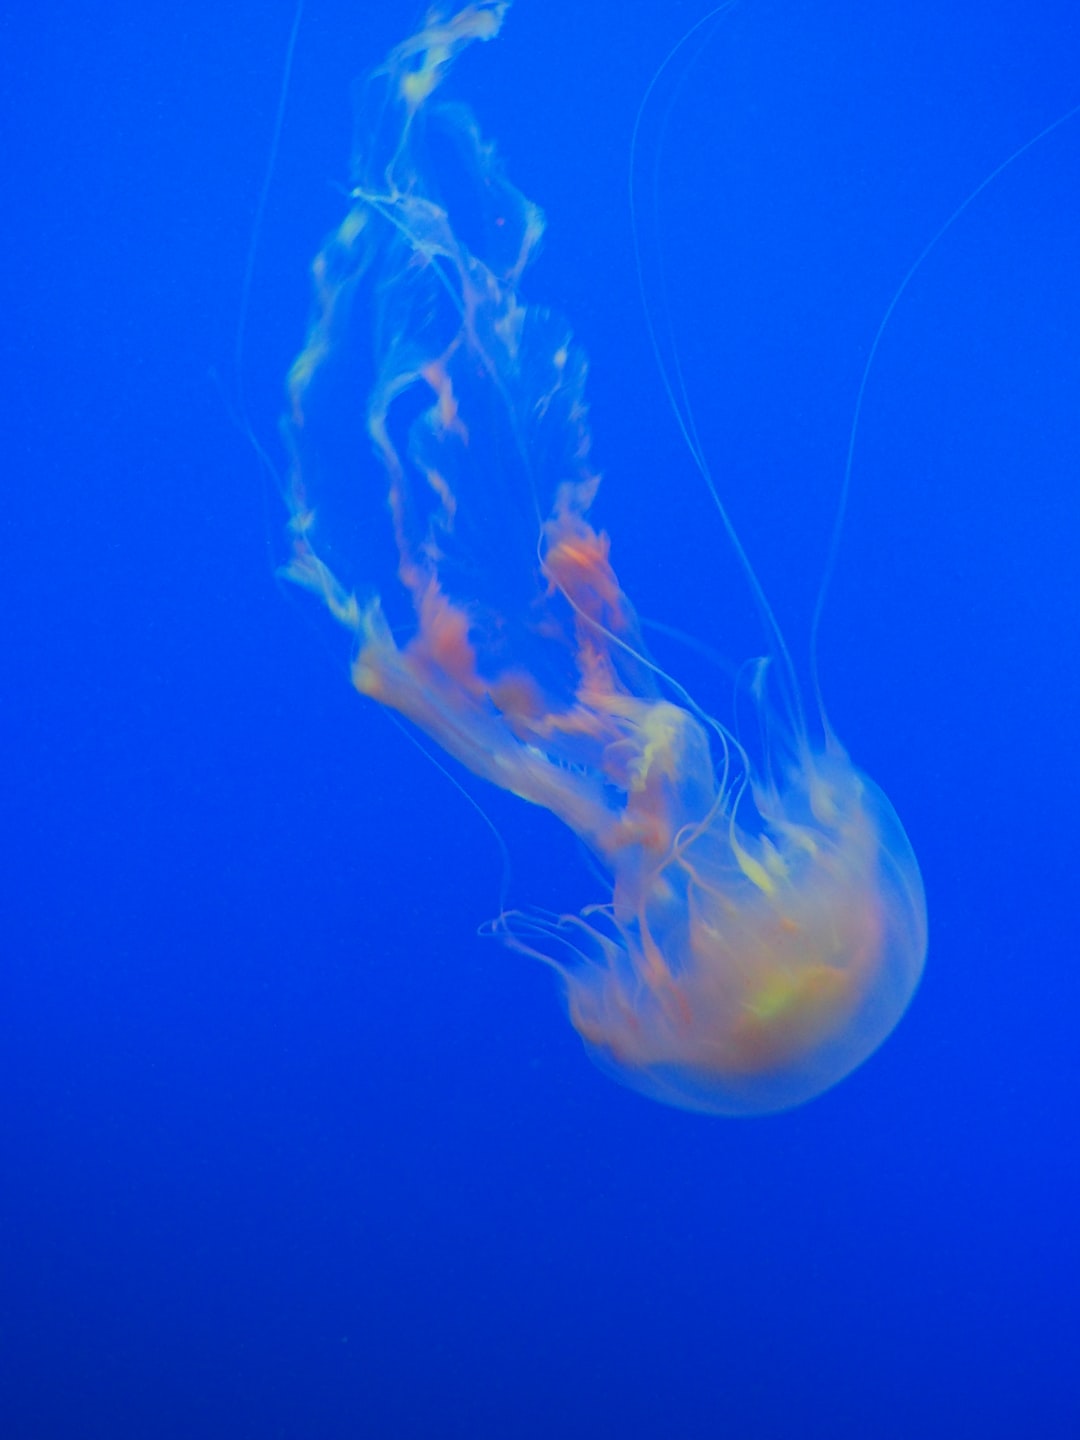 25 wichtige Fragen zu Kann Ein Aquarium Krankheiten Übertragen?